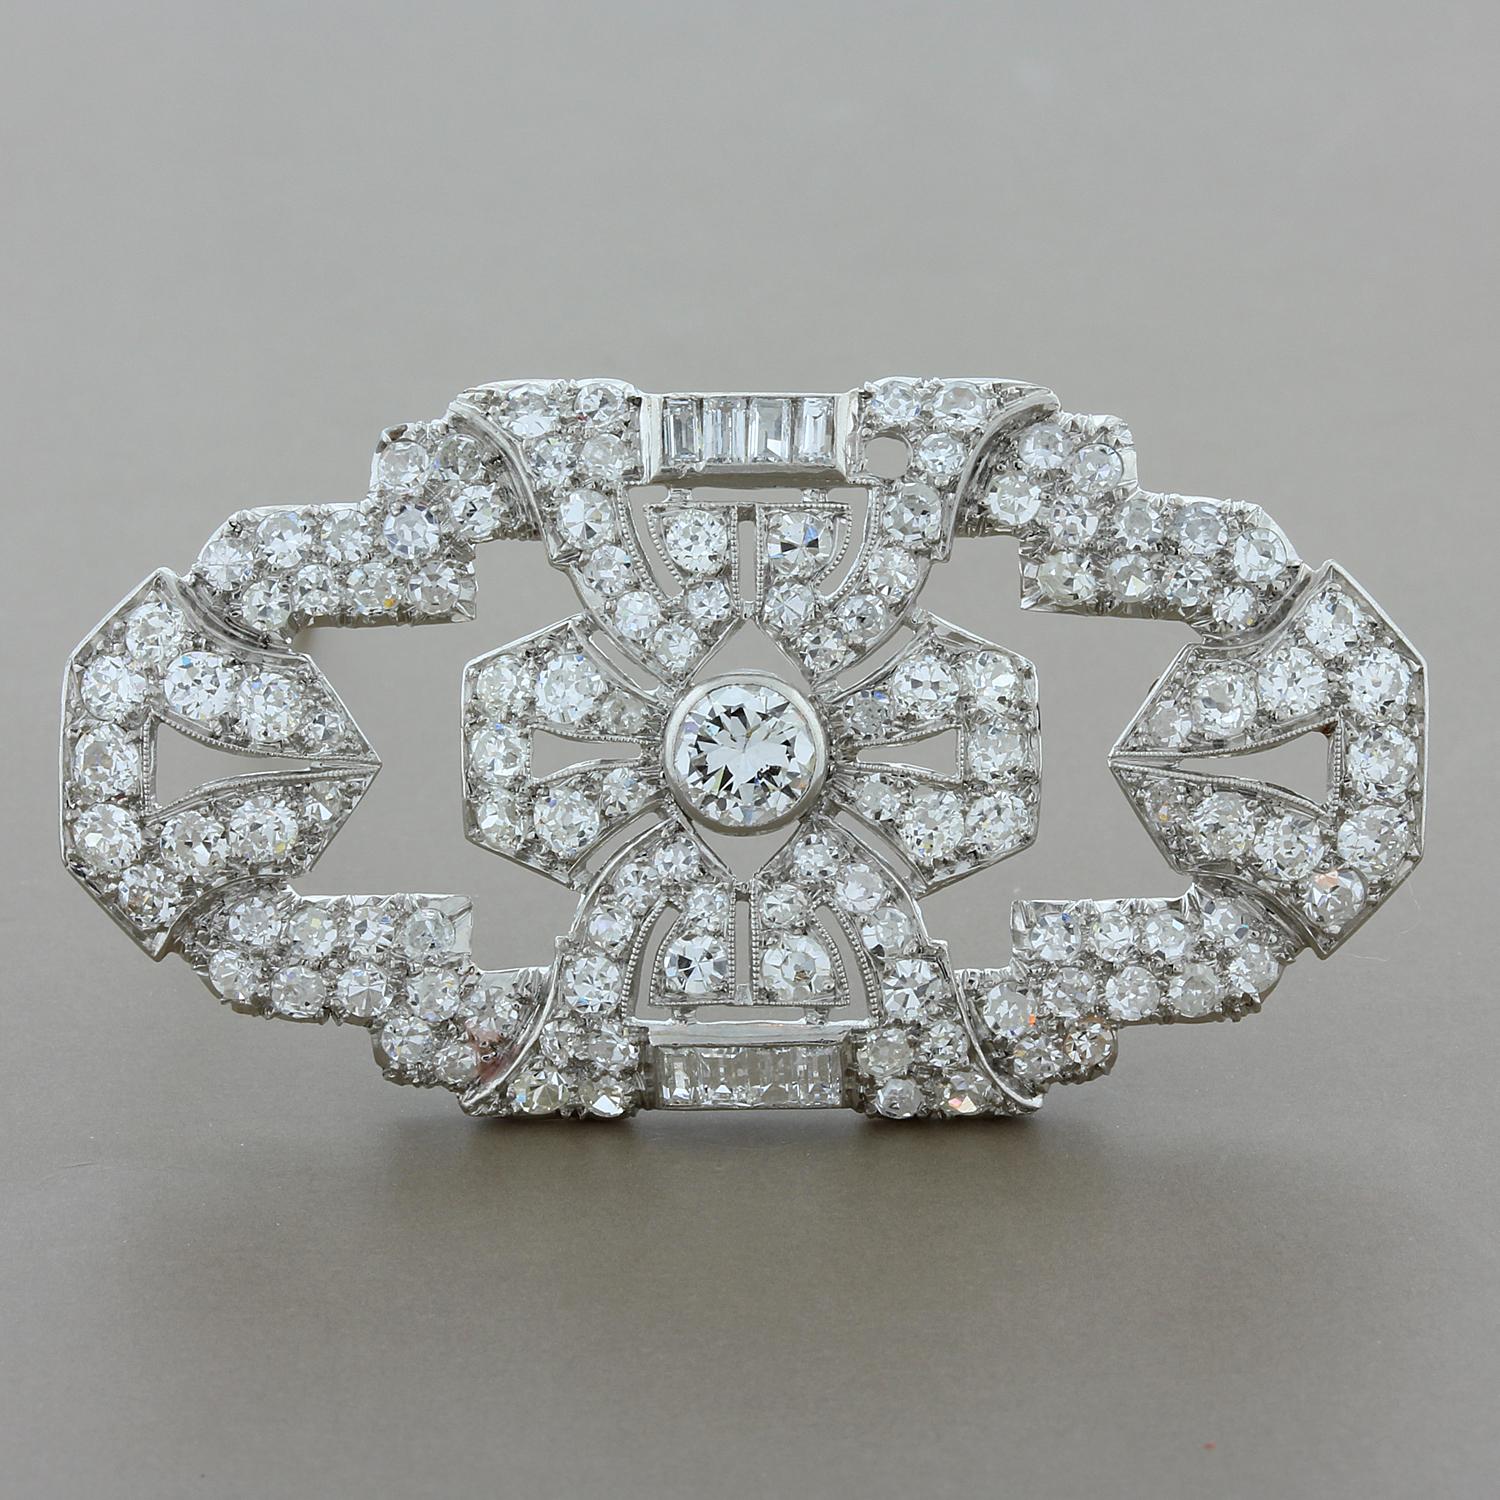 Une broche art-déco avec 8,60 carats de diamants de taille européenne. Un design intemporel des années 1920, une broche qui va bien avec n'importe quelle tenue, sertie en platine avec une broche en or jaune 18K.

Longueur de la broche : 2